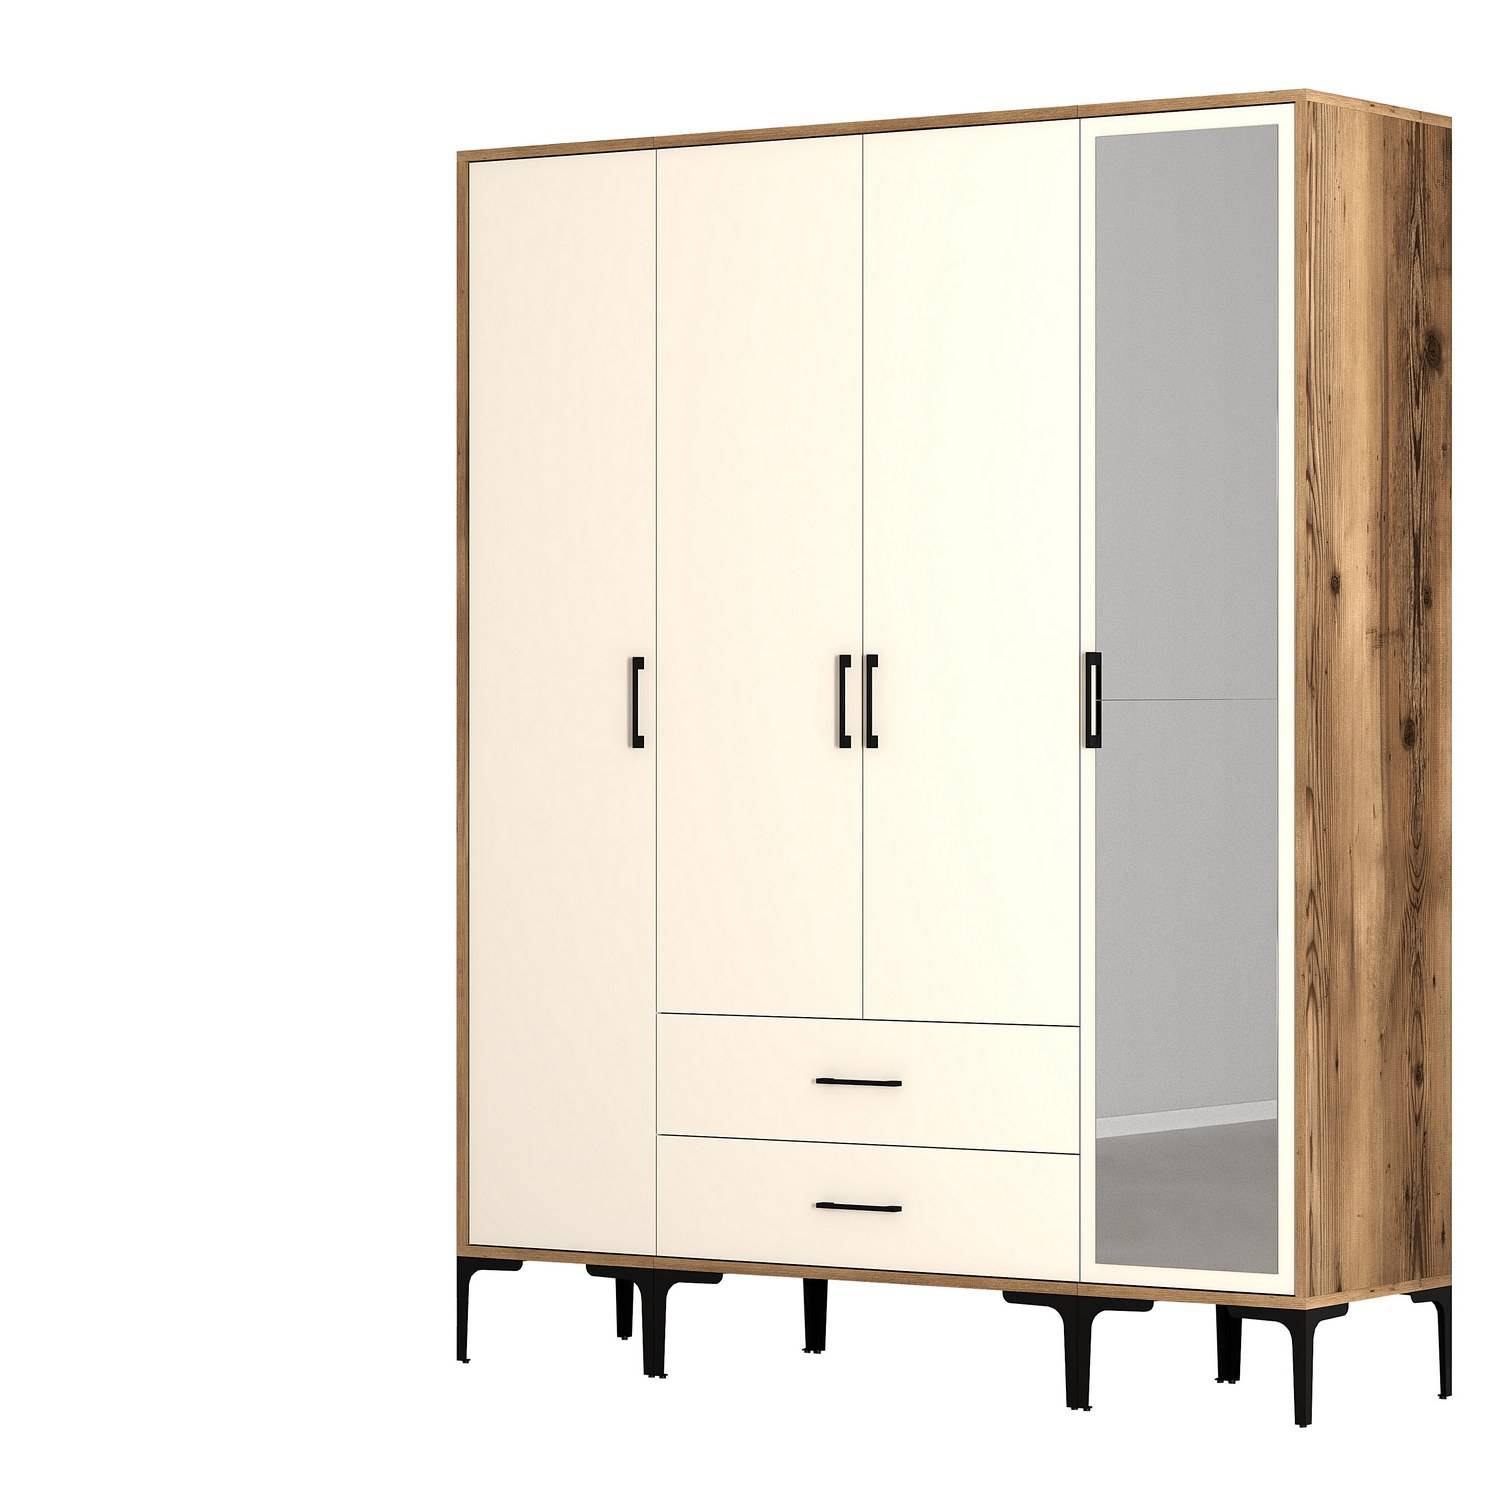 Akoy kledingkast in industriële stijl met deur, spiegel en 2 laden L160cm Donker hout en crèmewit